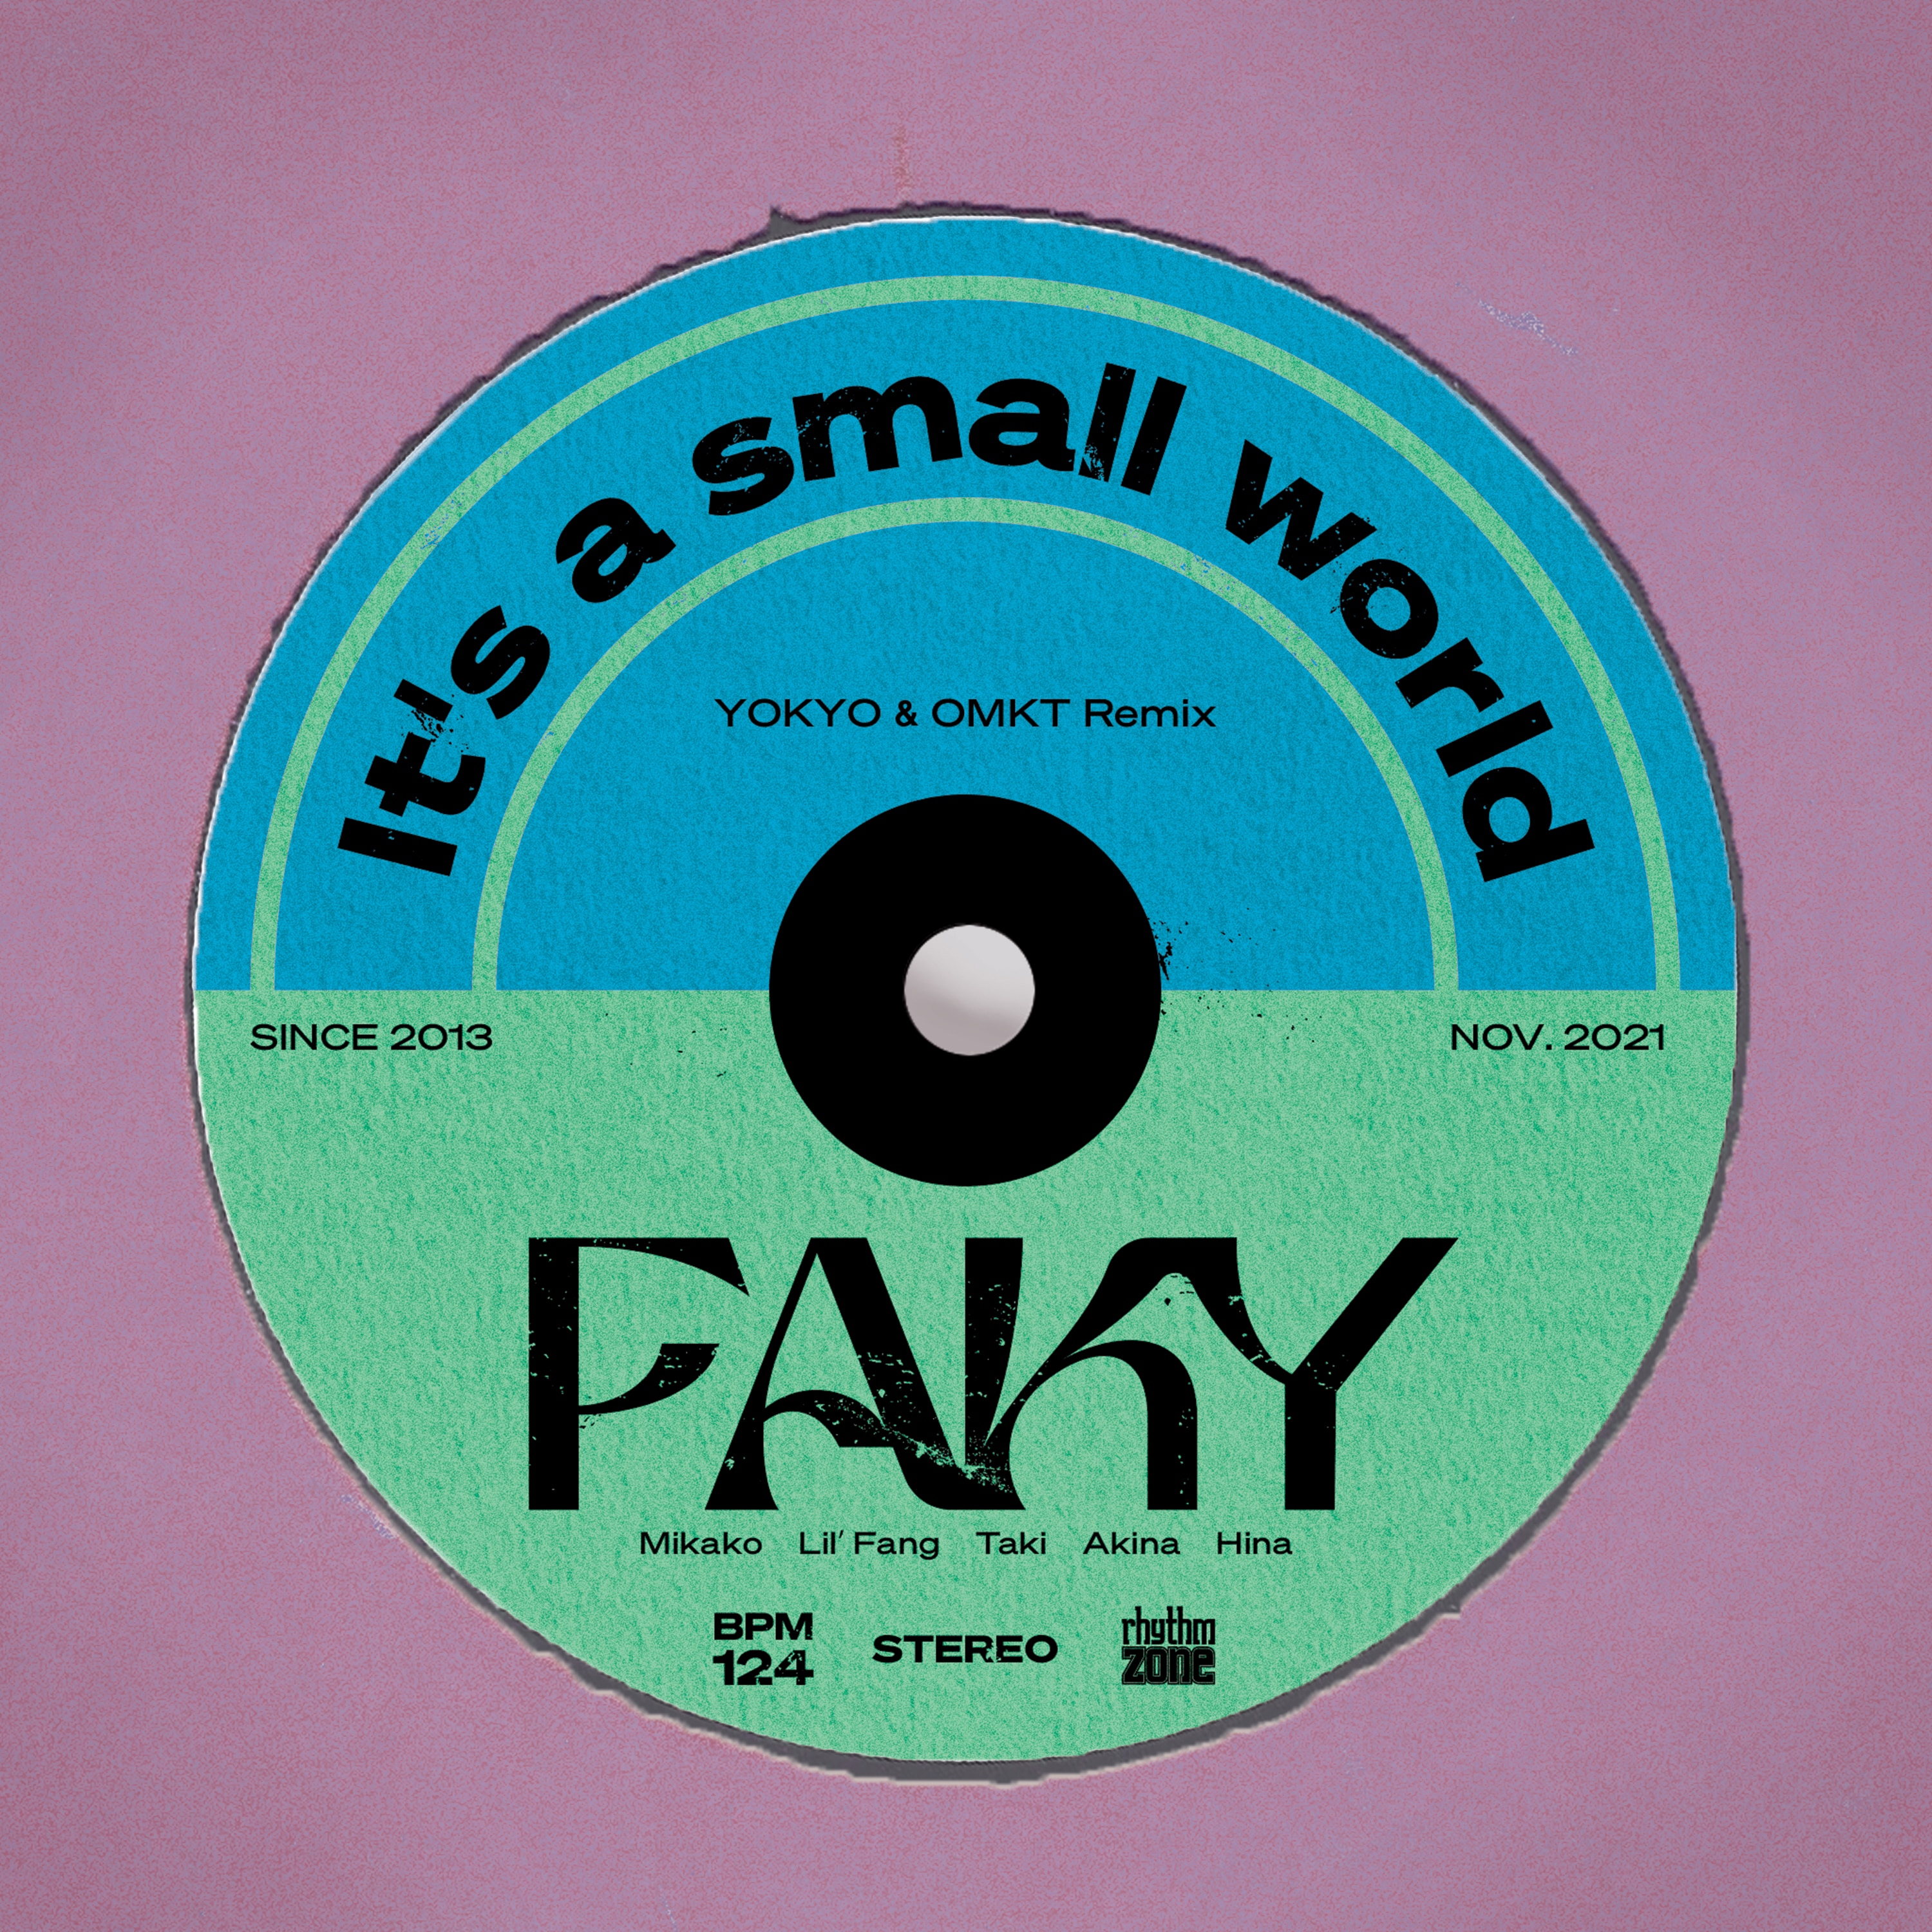 It’s a small world (YOKYO & OMKT Remix)